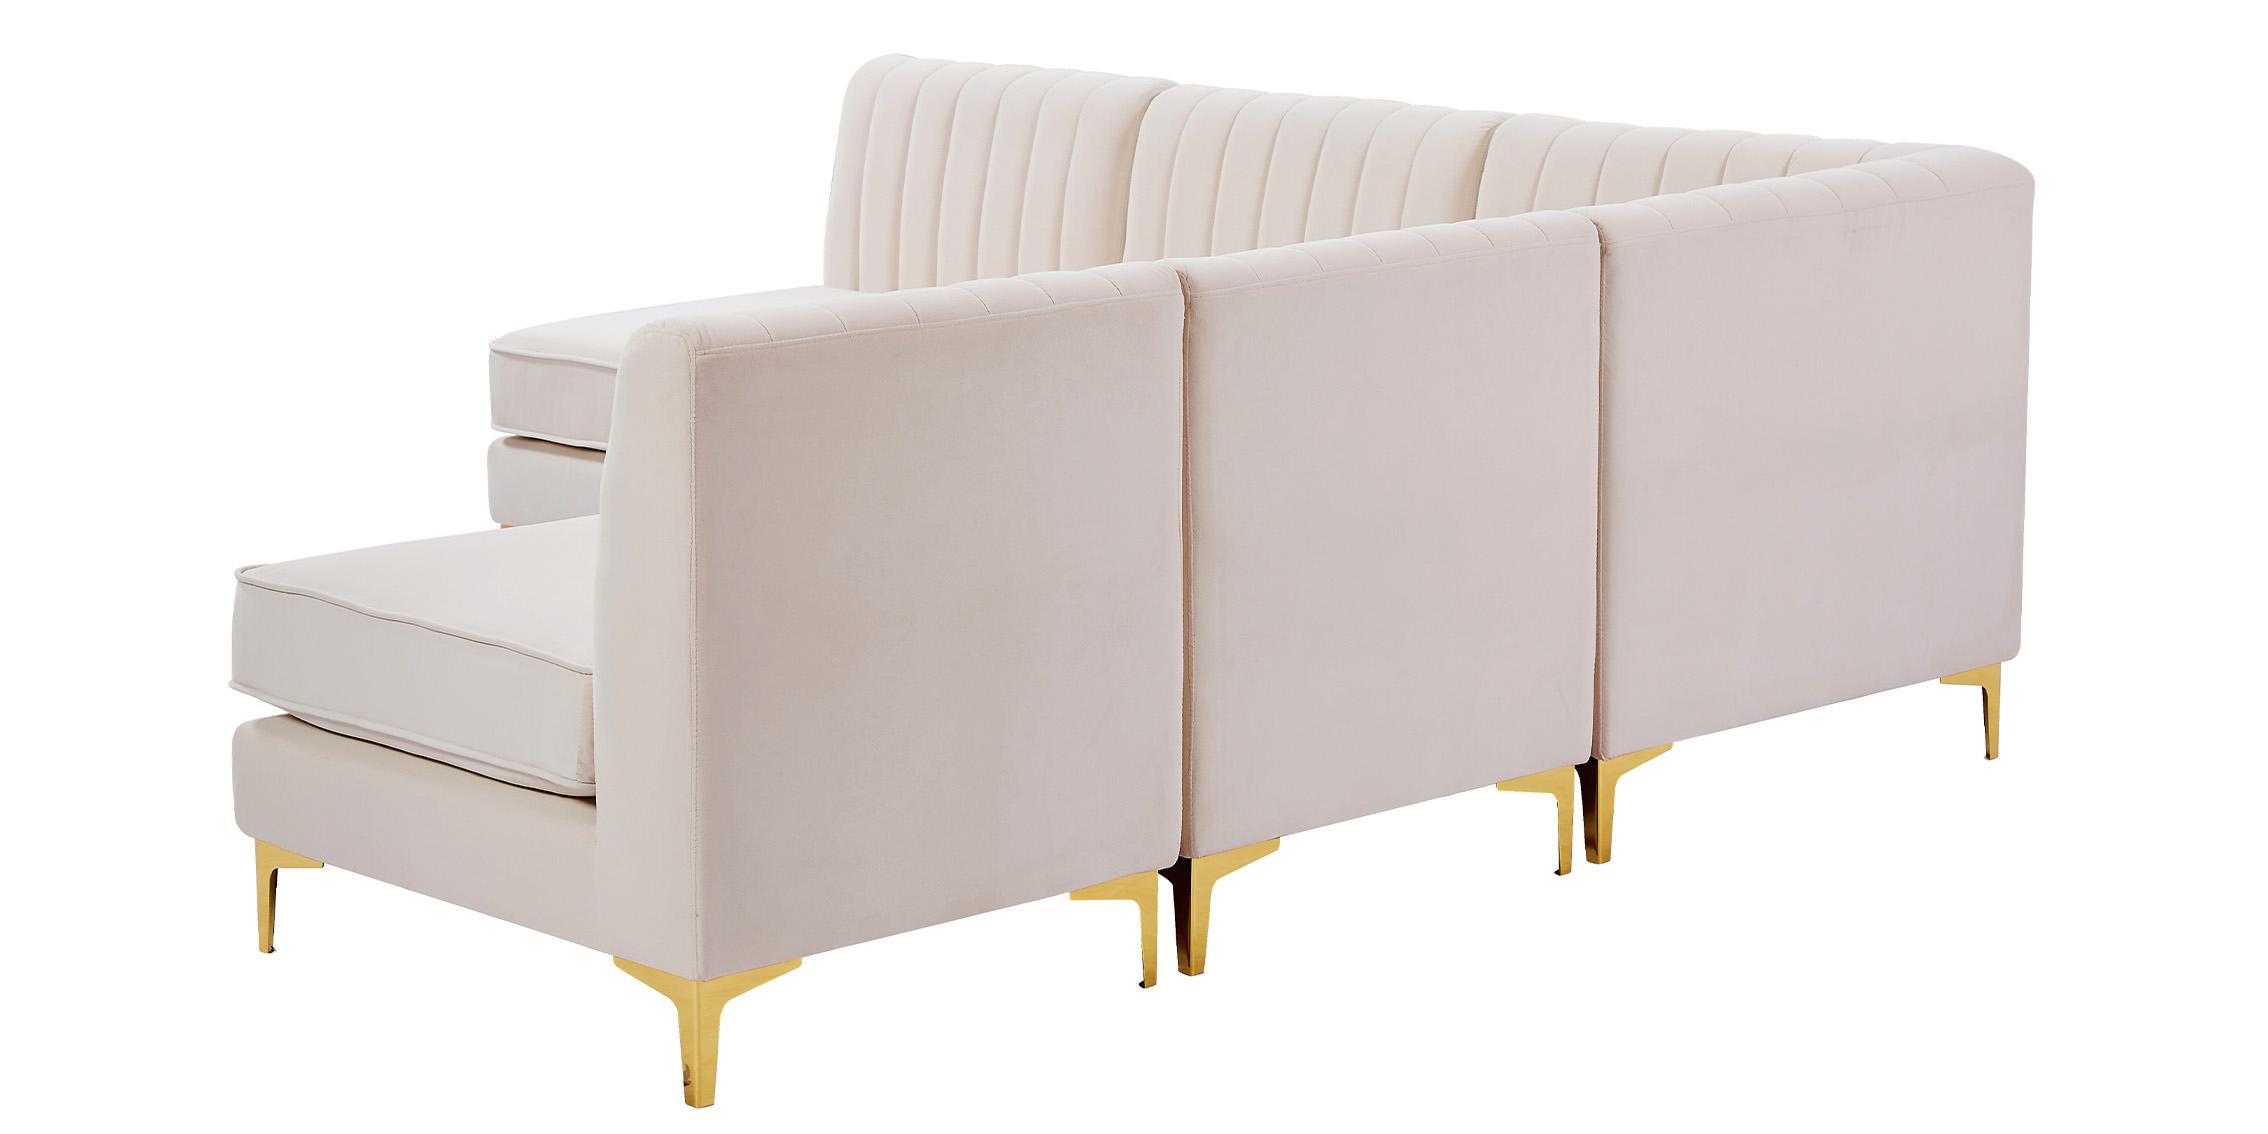 

    
604Pink-Sec5A Meridian Furniture Modular Sectional Sofa
